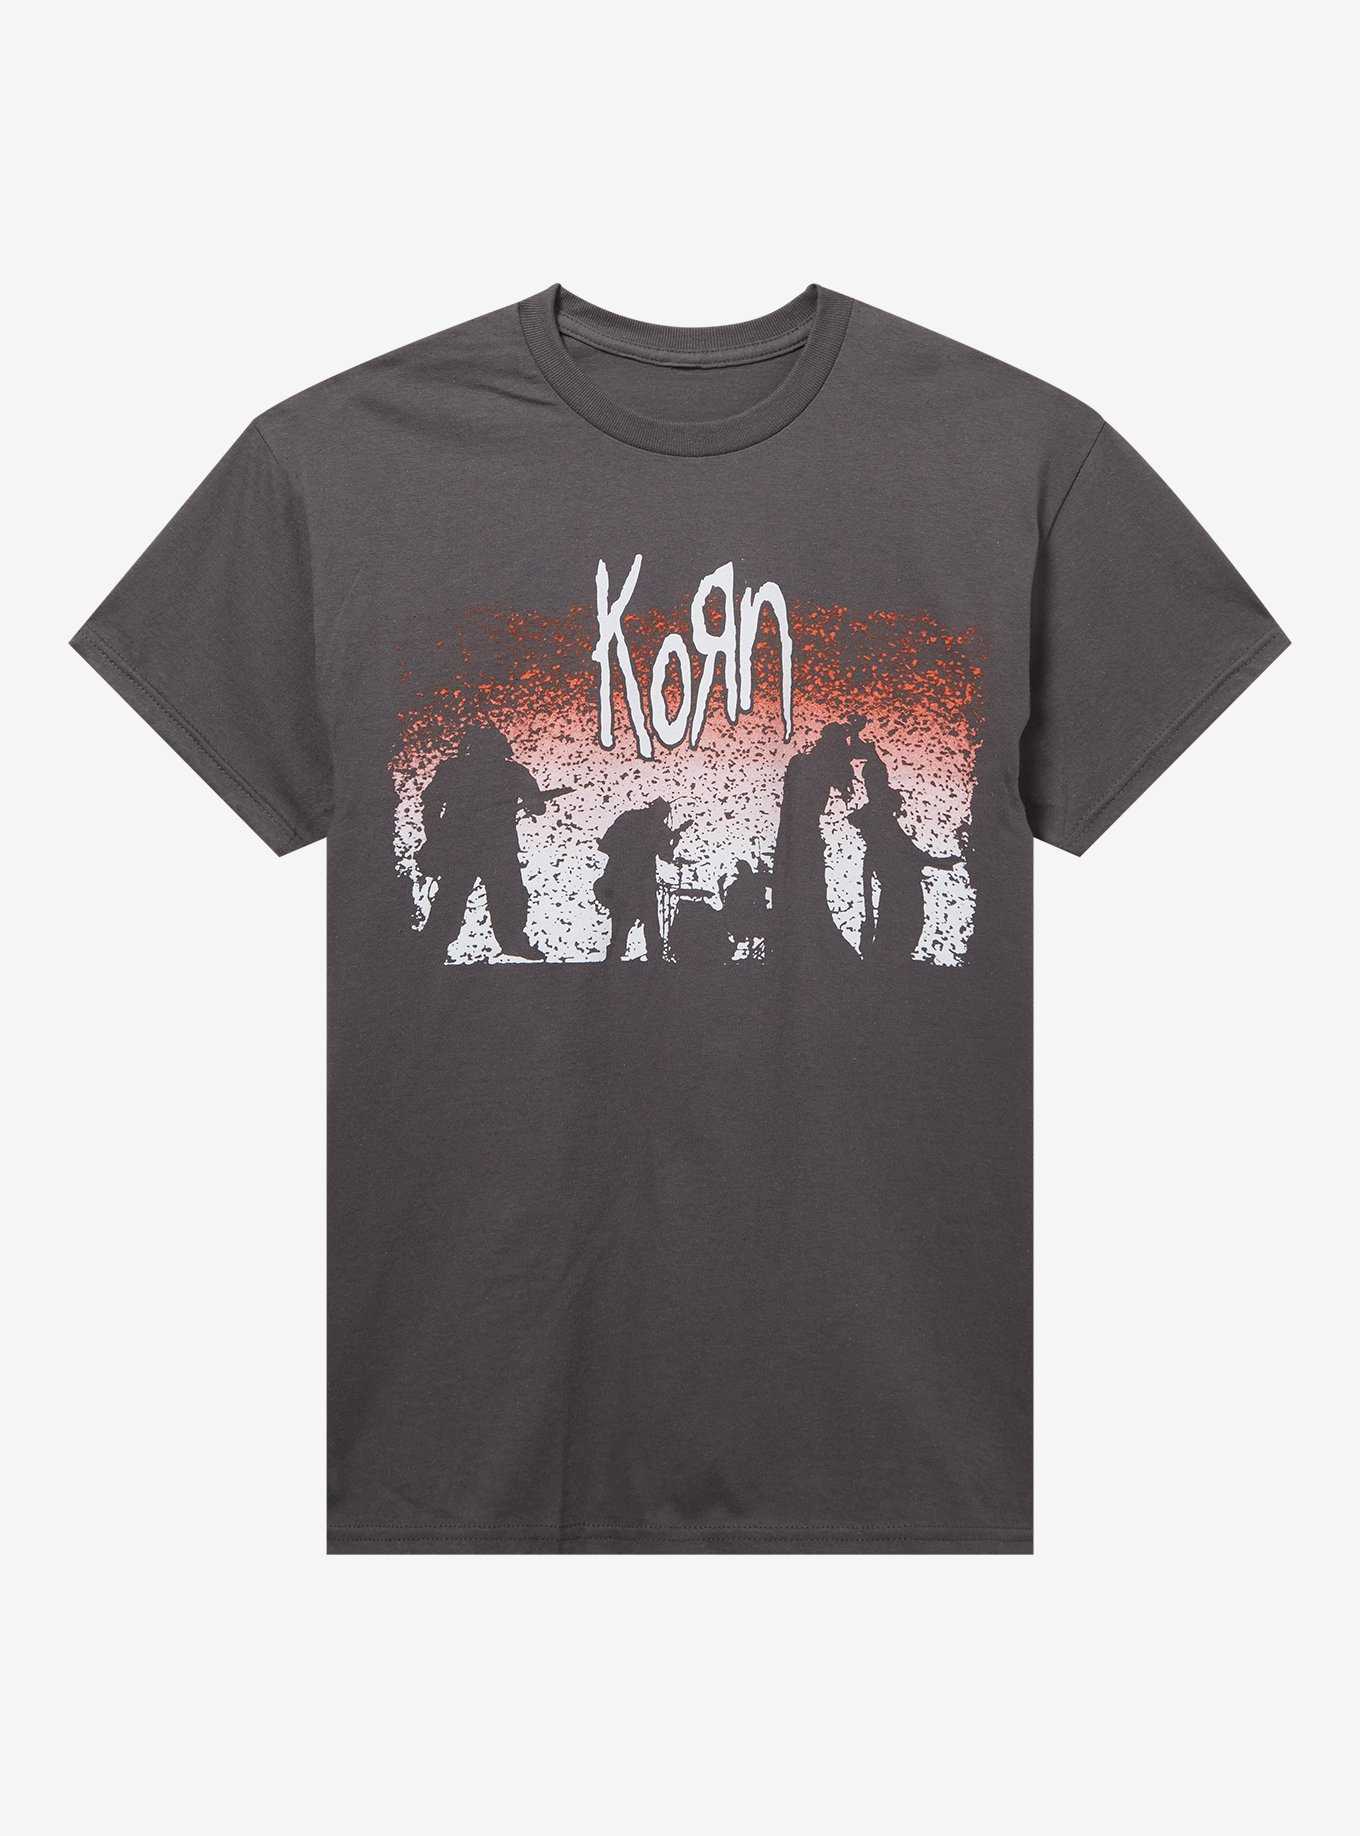 Korn Tank Top korn shirt mettalic xs S, m , l & xl